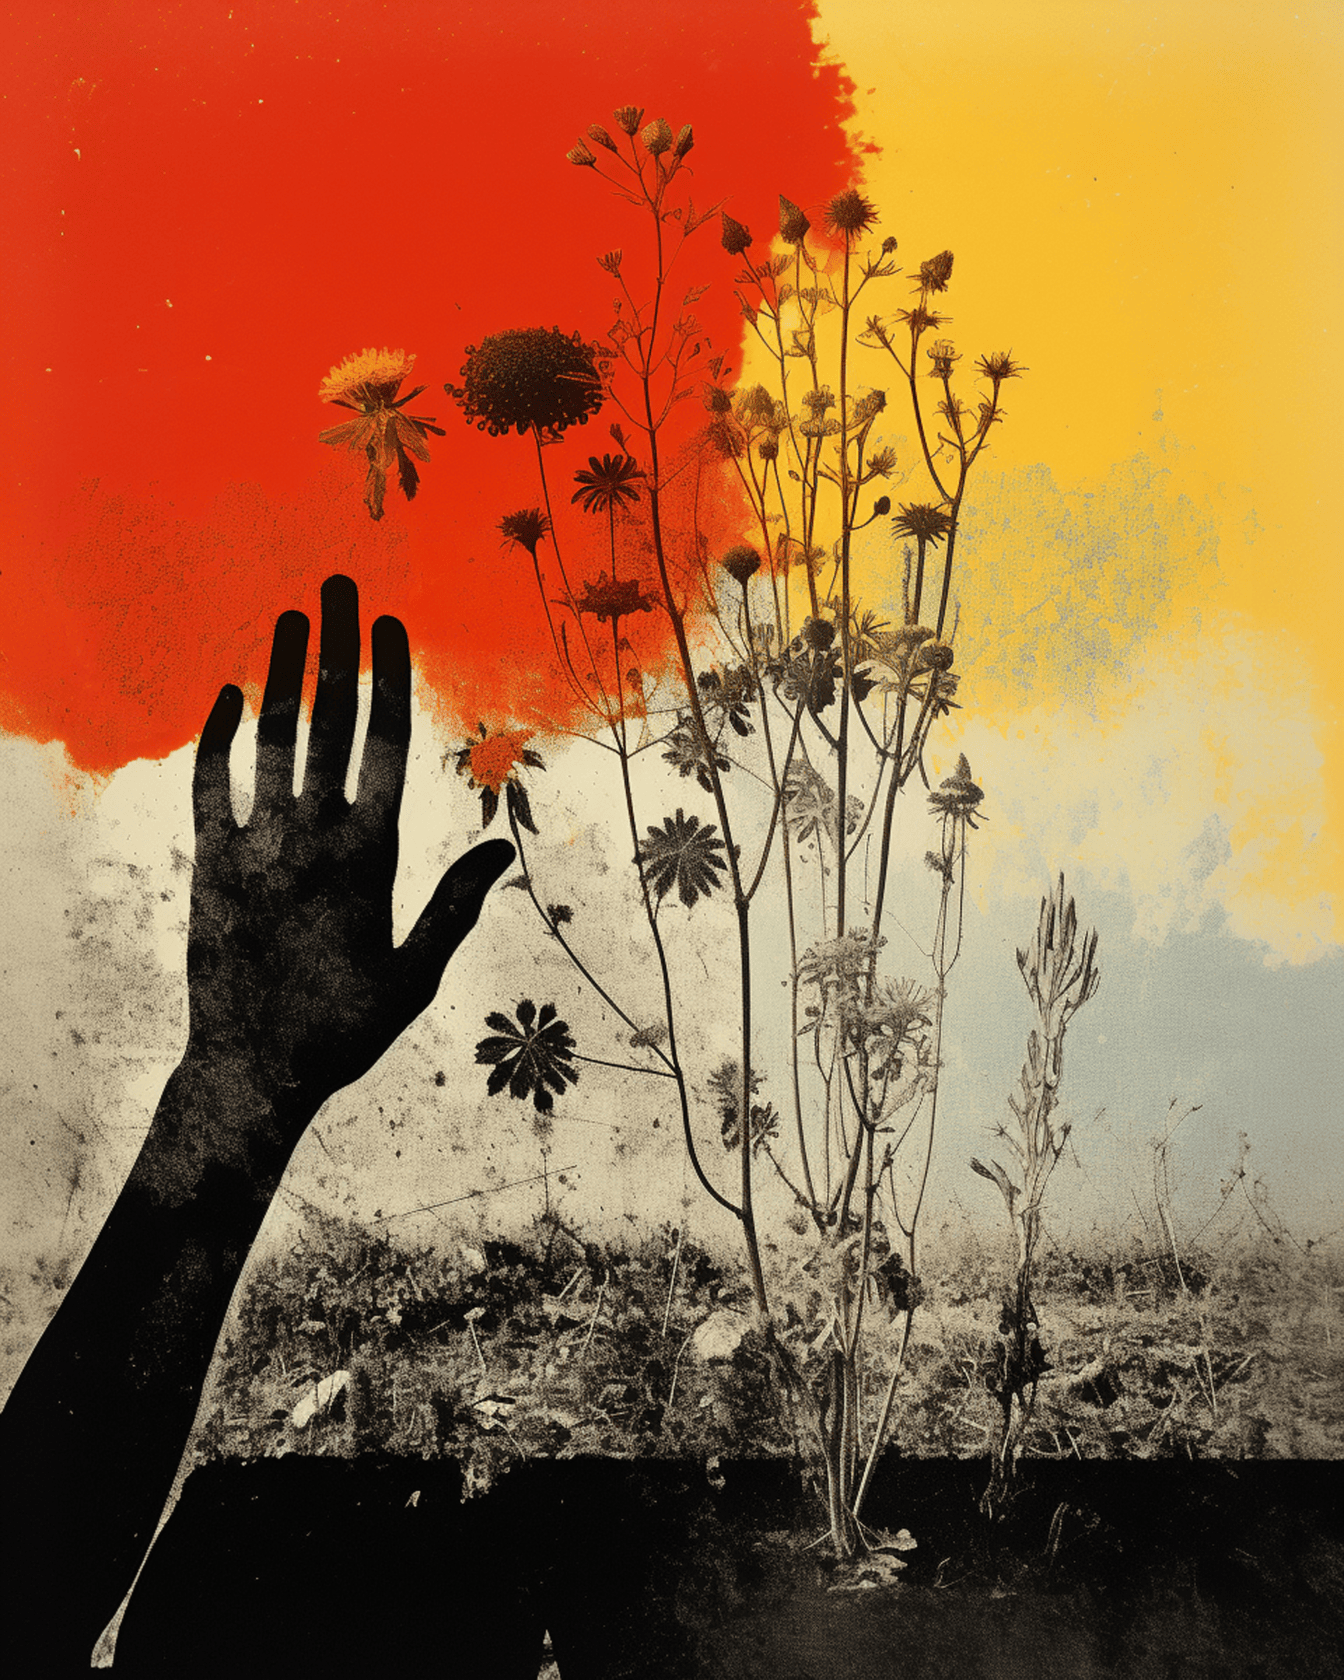 Fekete kézzel készített digitális illusztráció narancssárga háttérrel